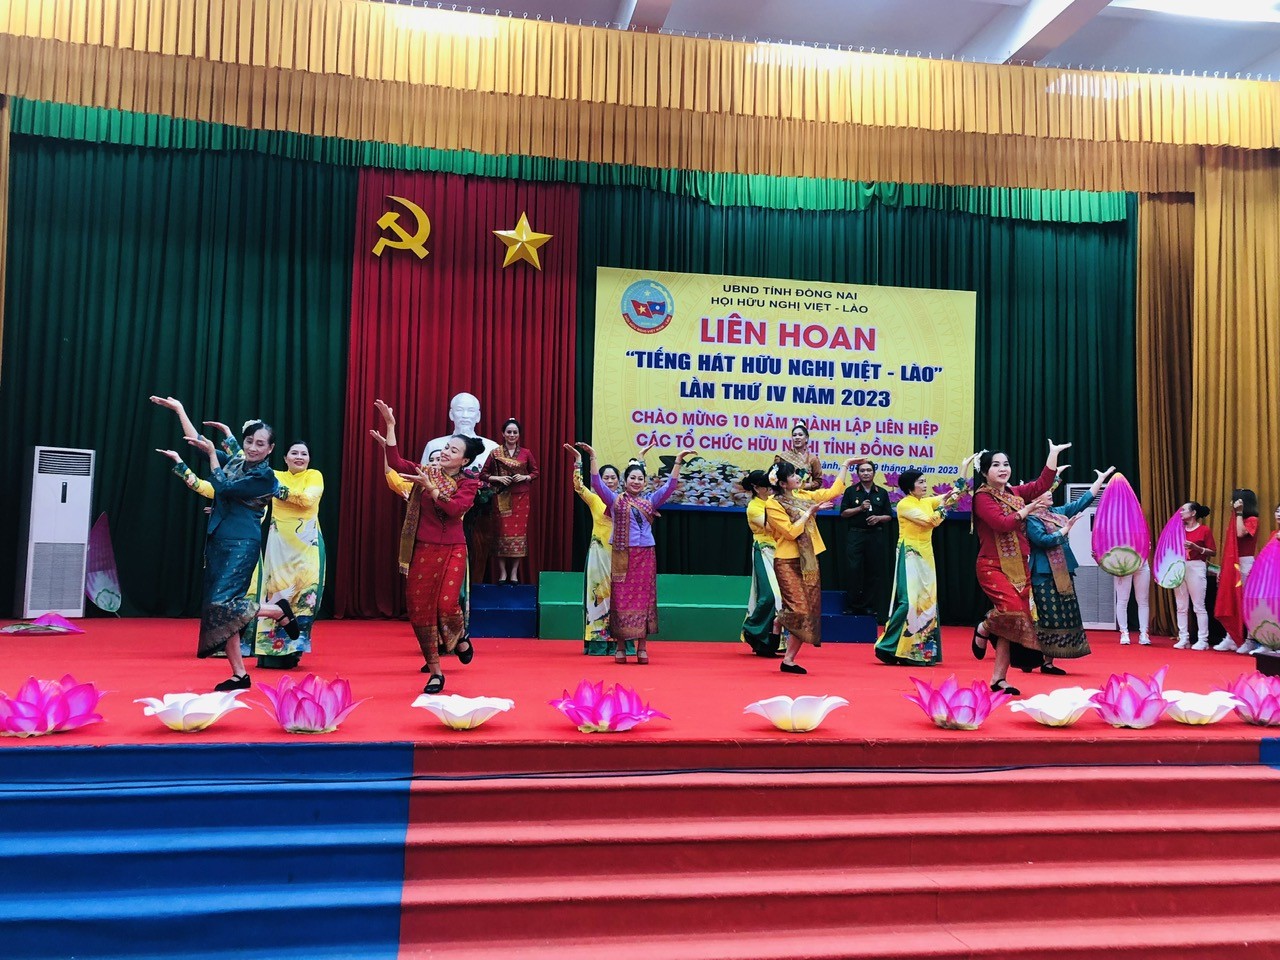 Tiếng hát ngợi ca tình hữu nghị Việt - Lào